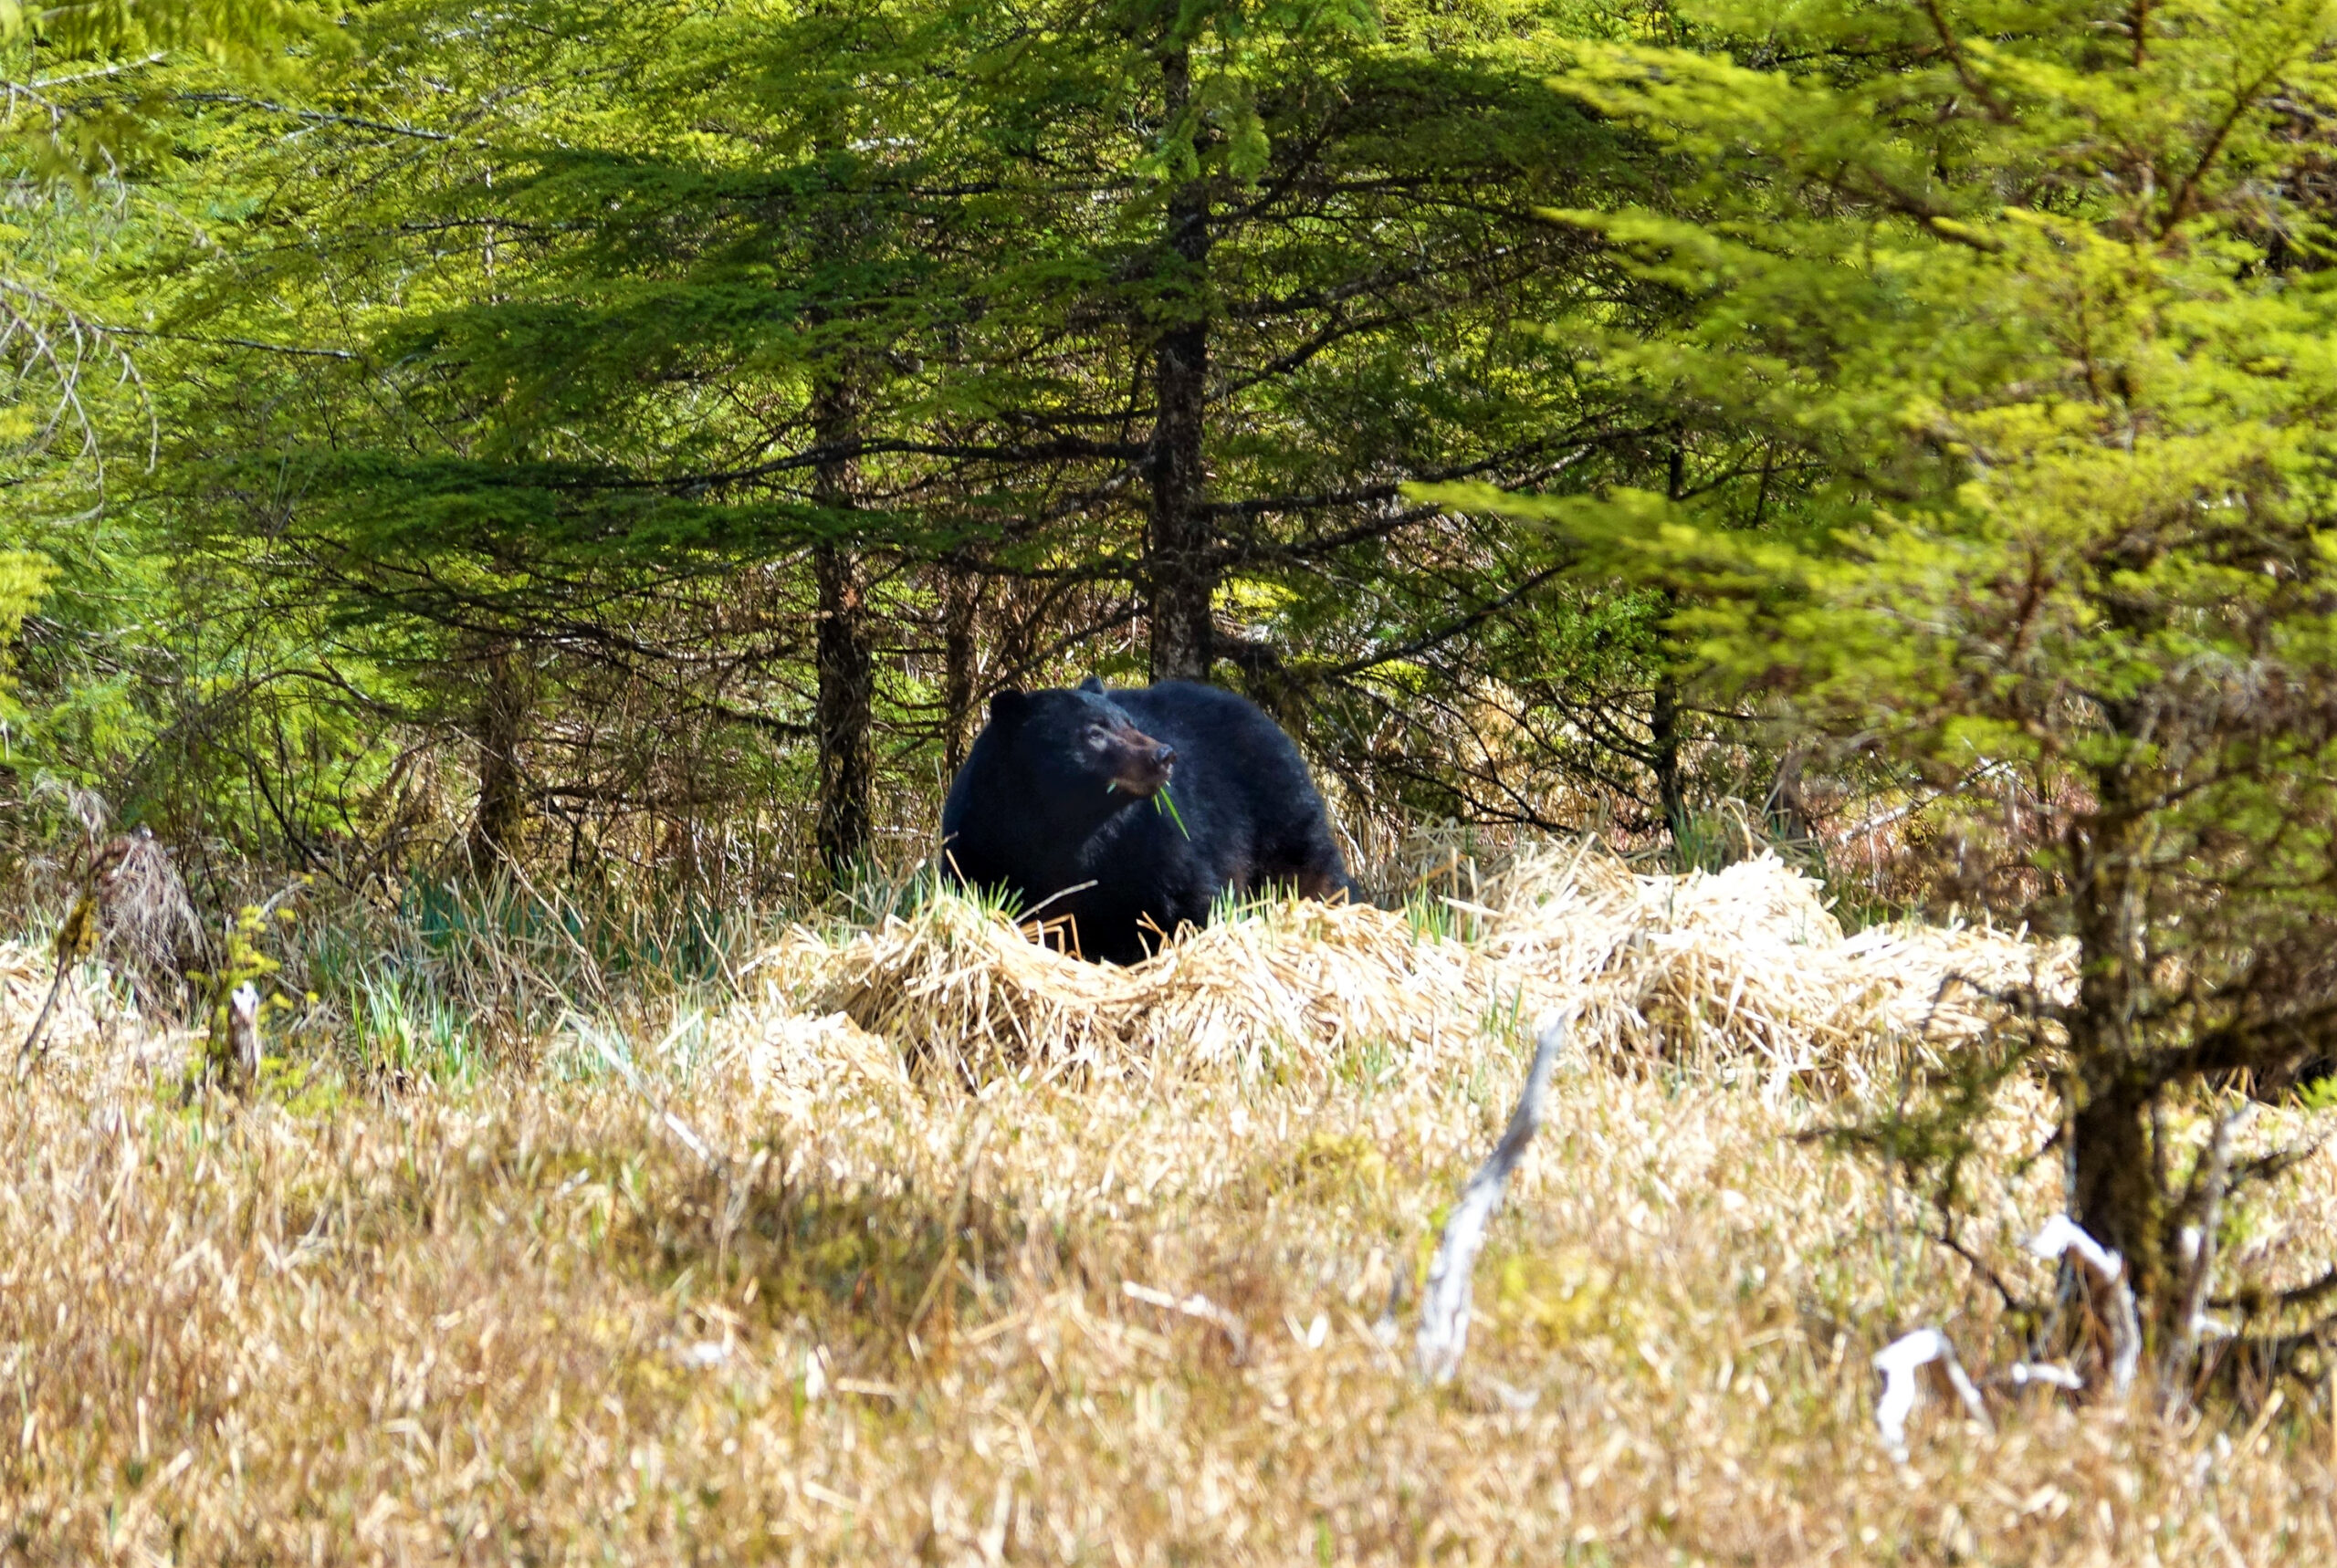 A black bear on prince of wales island.